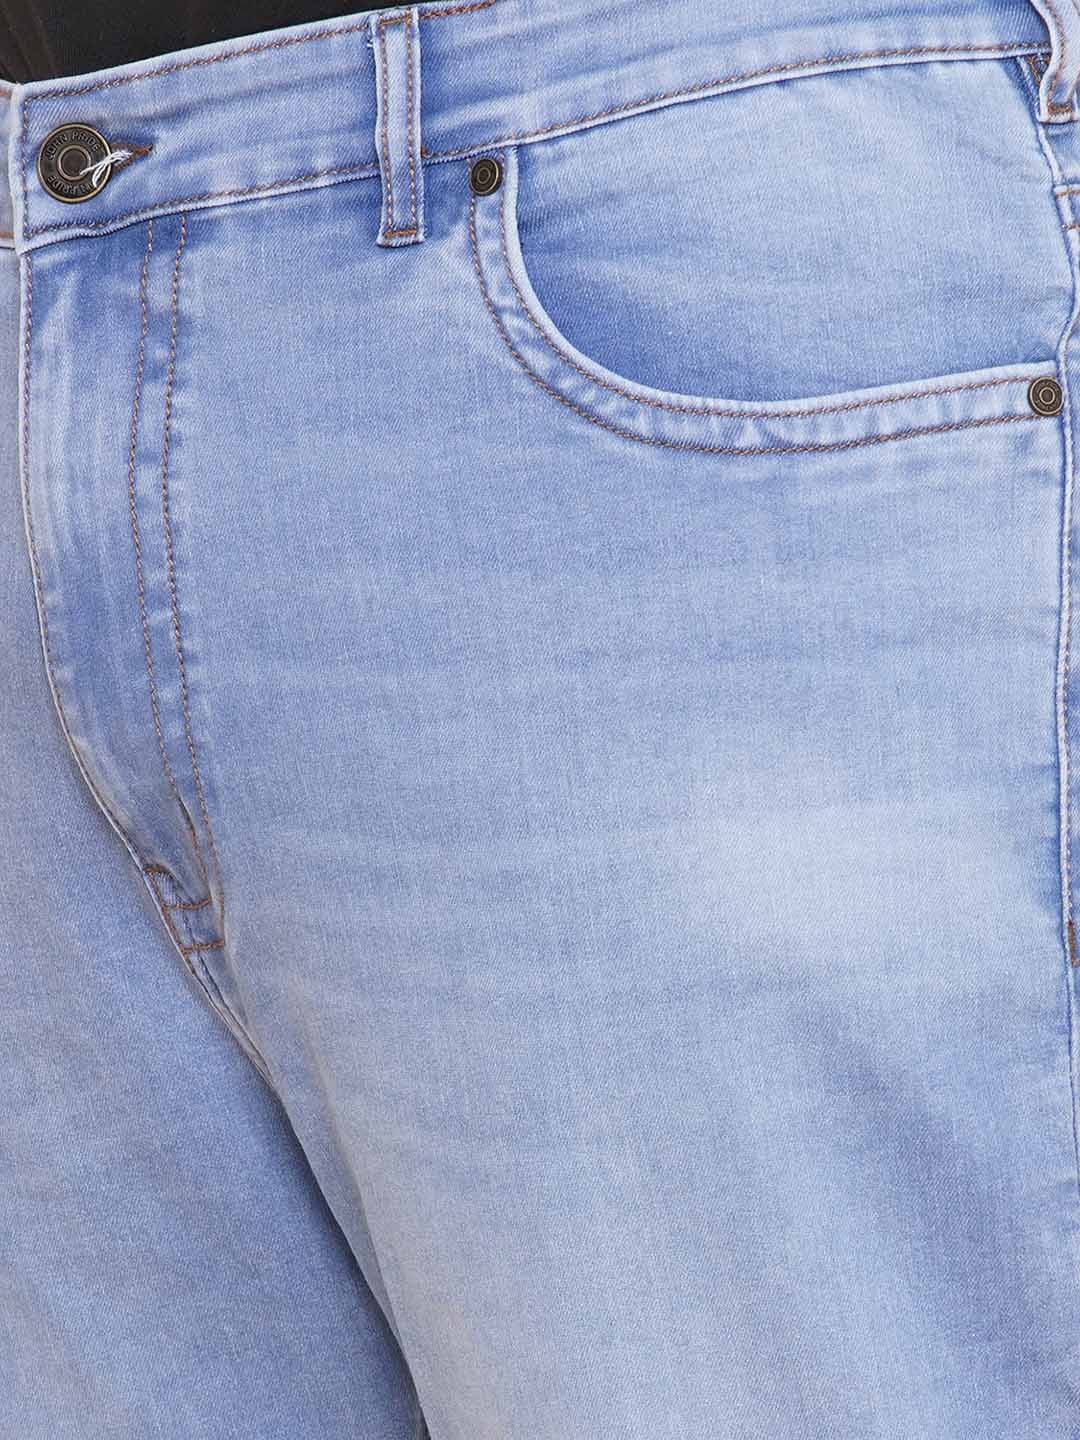 bottomwear/jeans/JPJ12407/jpj12407-2.jpg